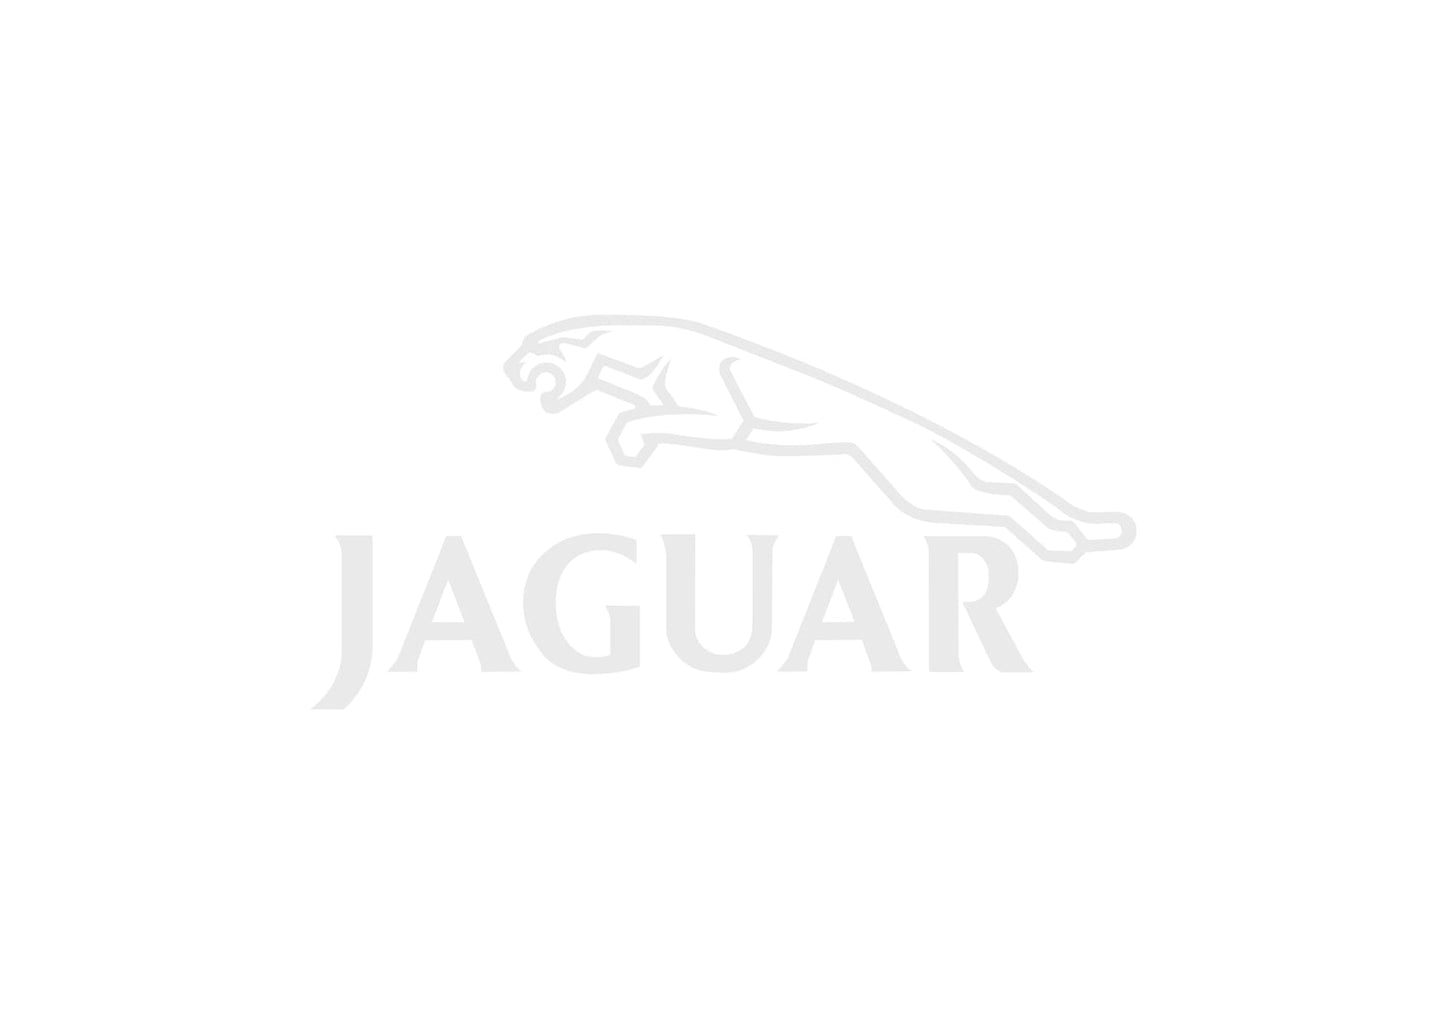 2004-2005 Jaguar XK Owner's Manual | Dutch